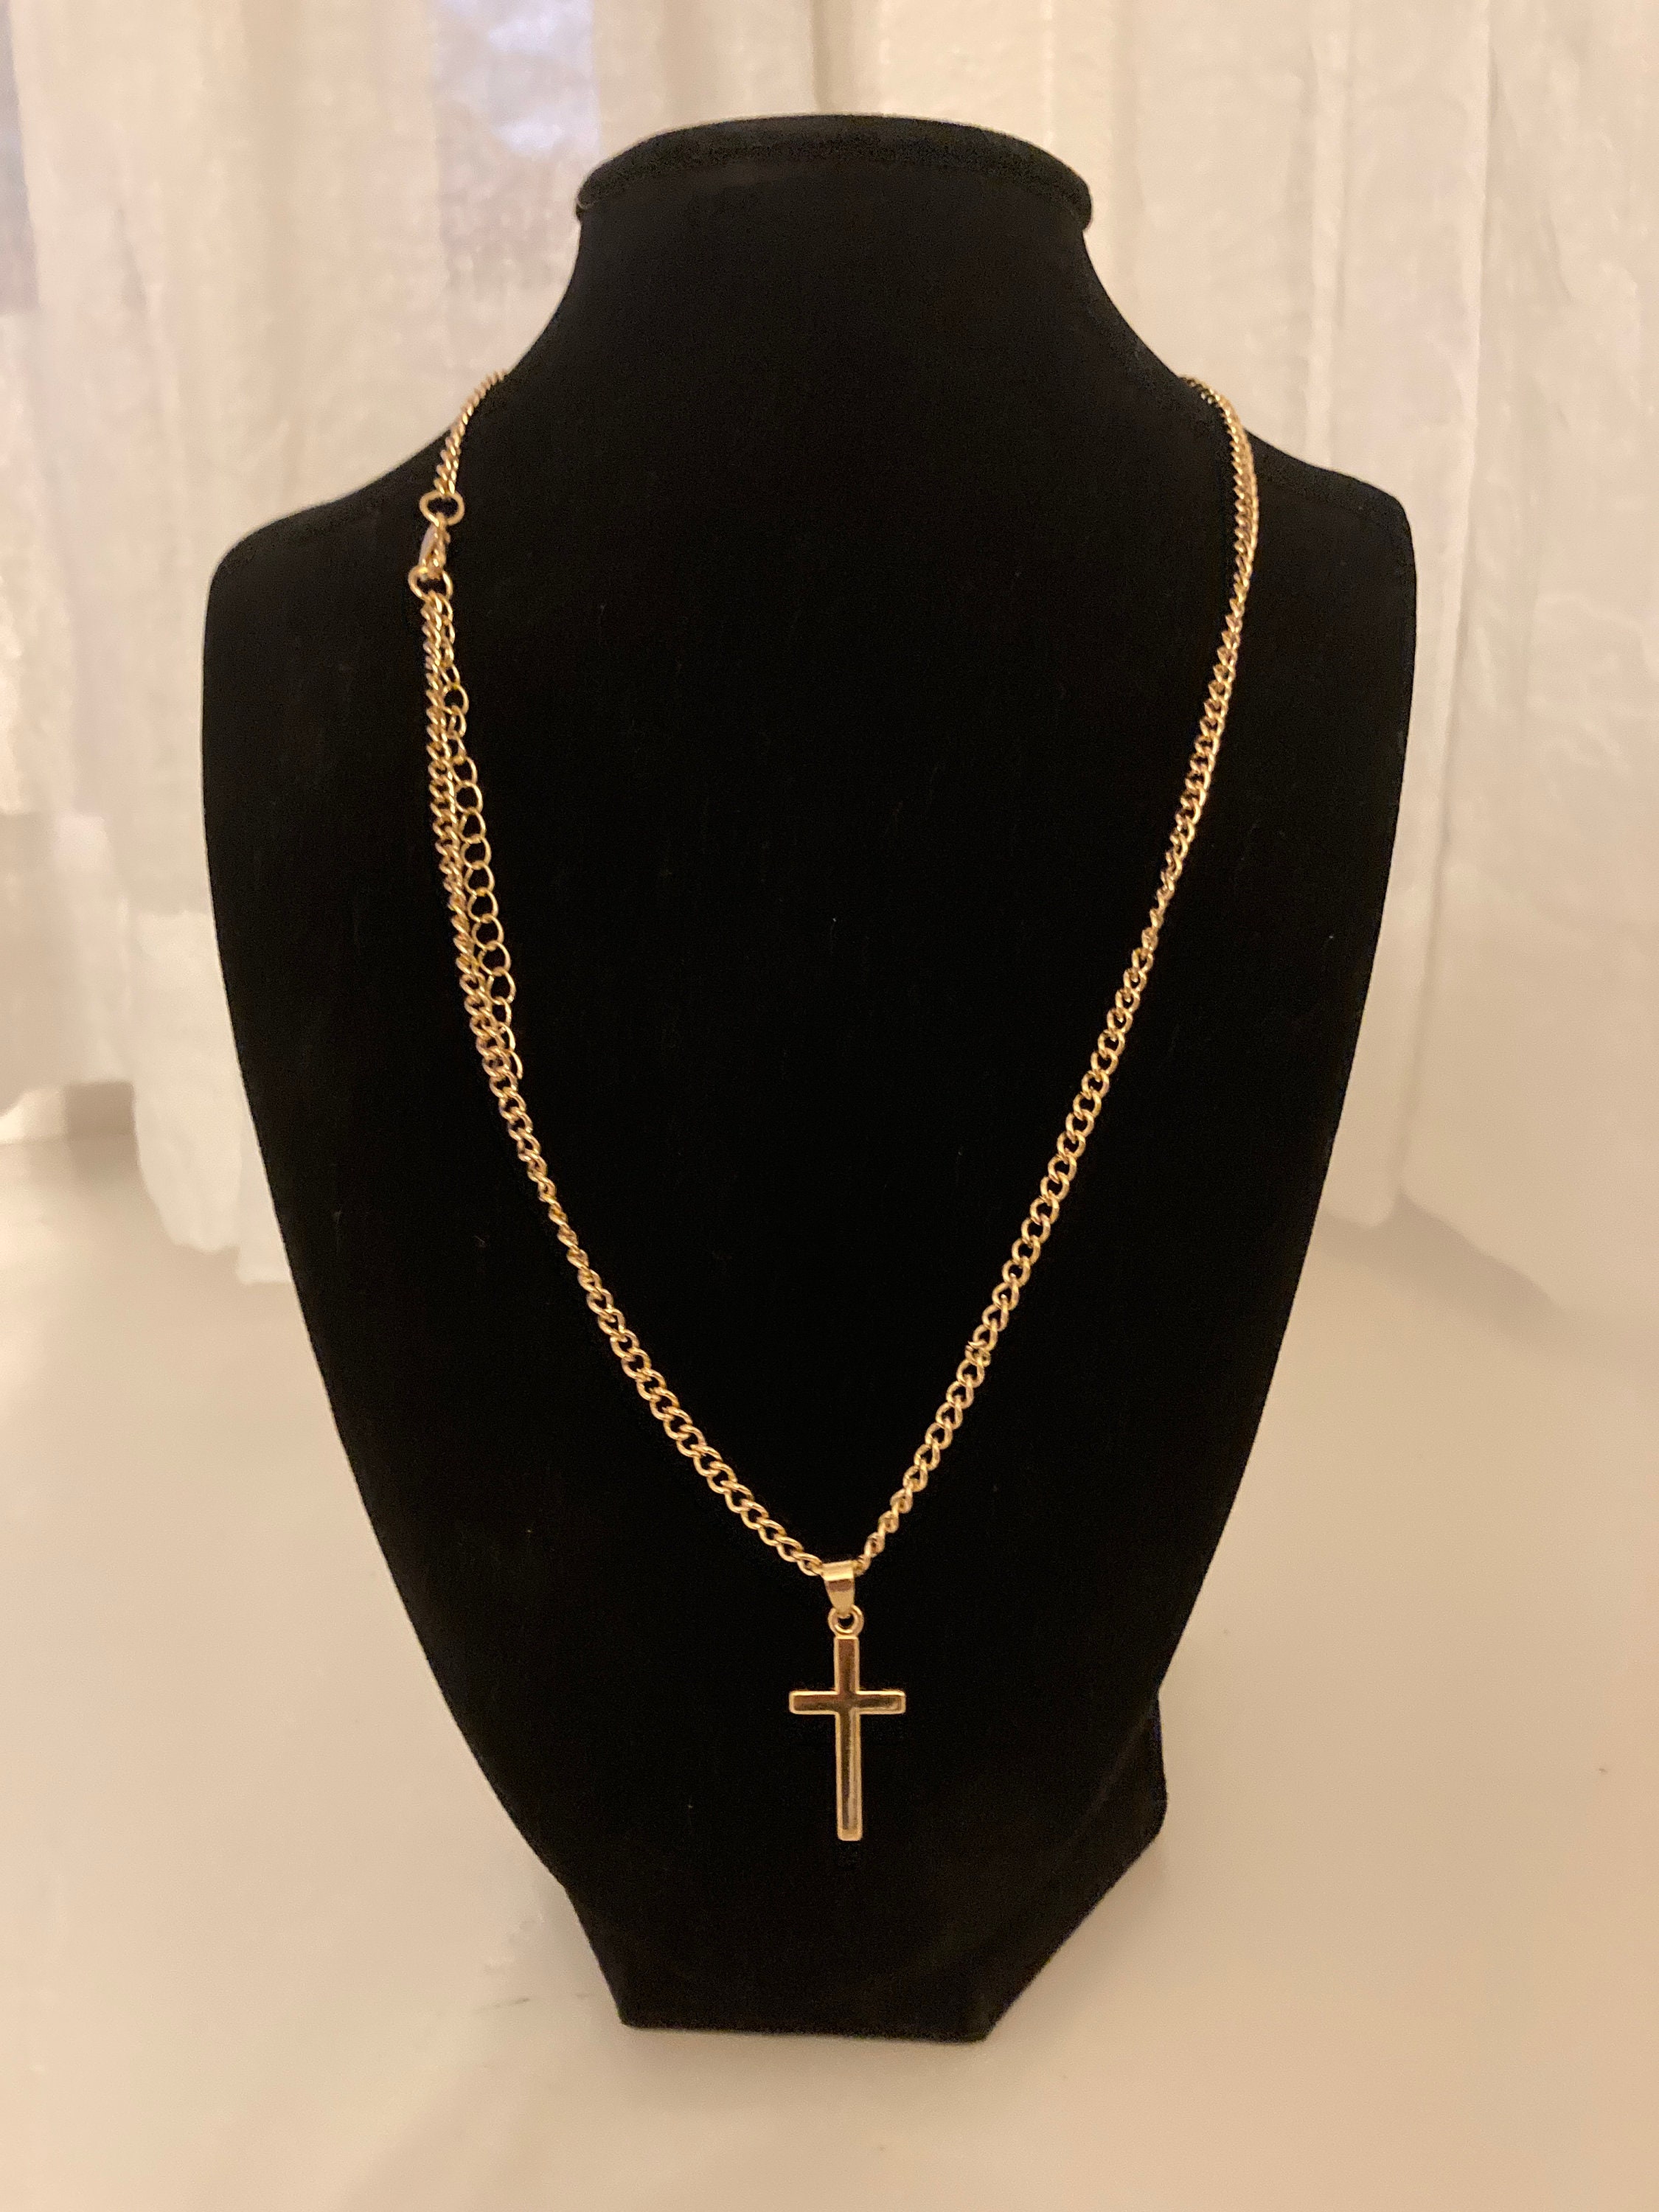 18k Gold Plated Cross Pendant Necklace for Men Women Kids | Etsy